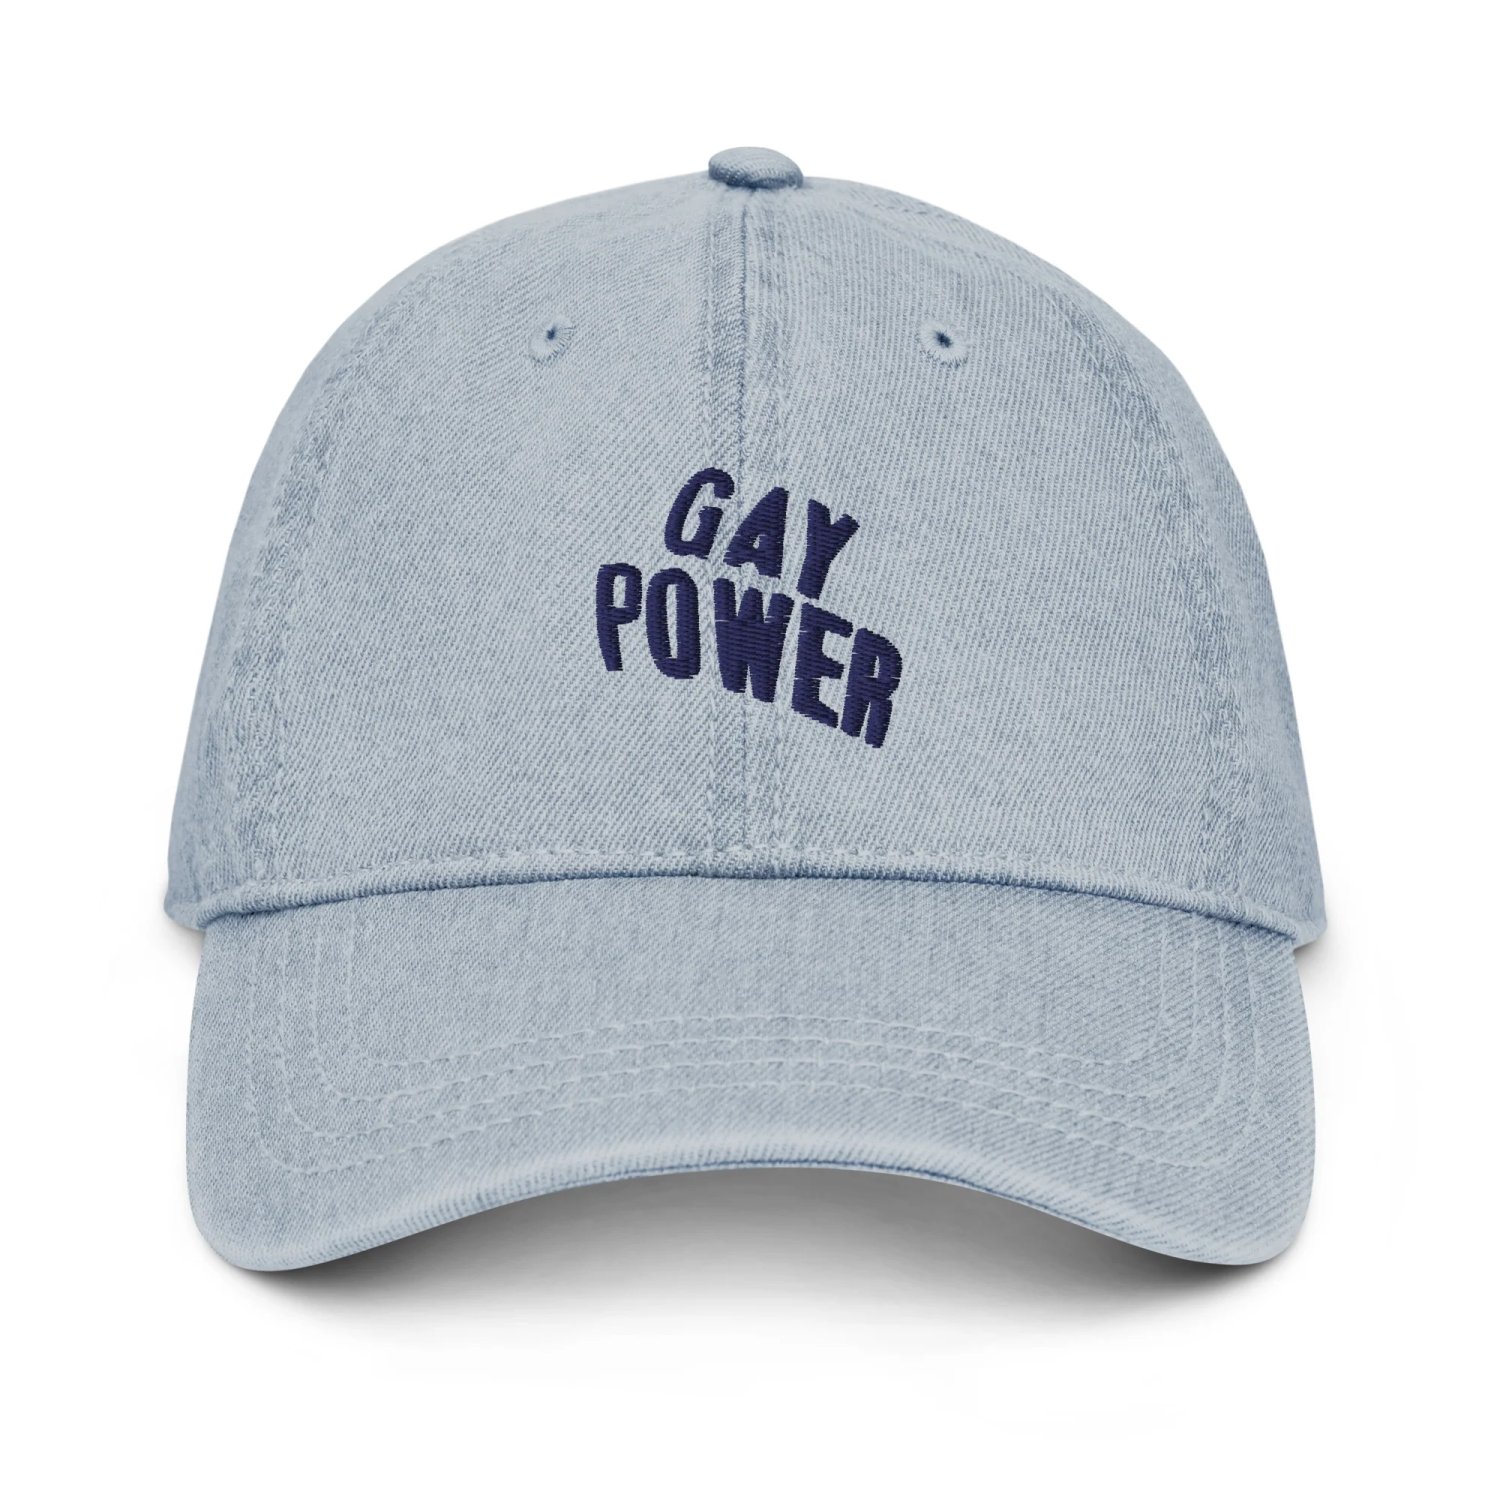 Otherwild-Gay Power Hat-Famm.jpg